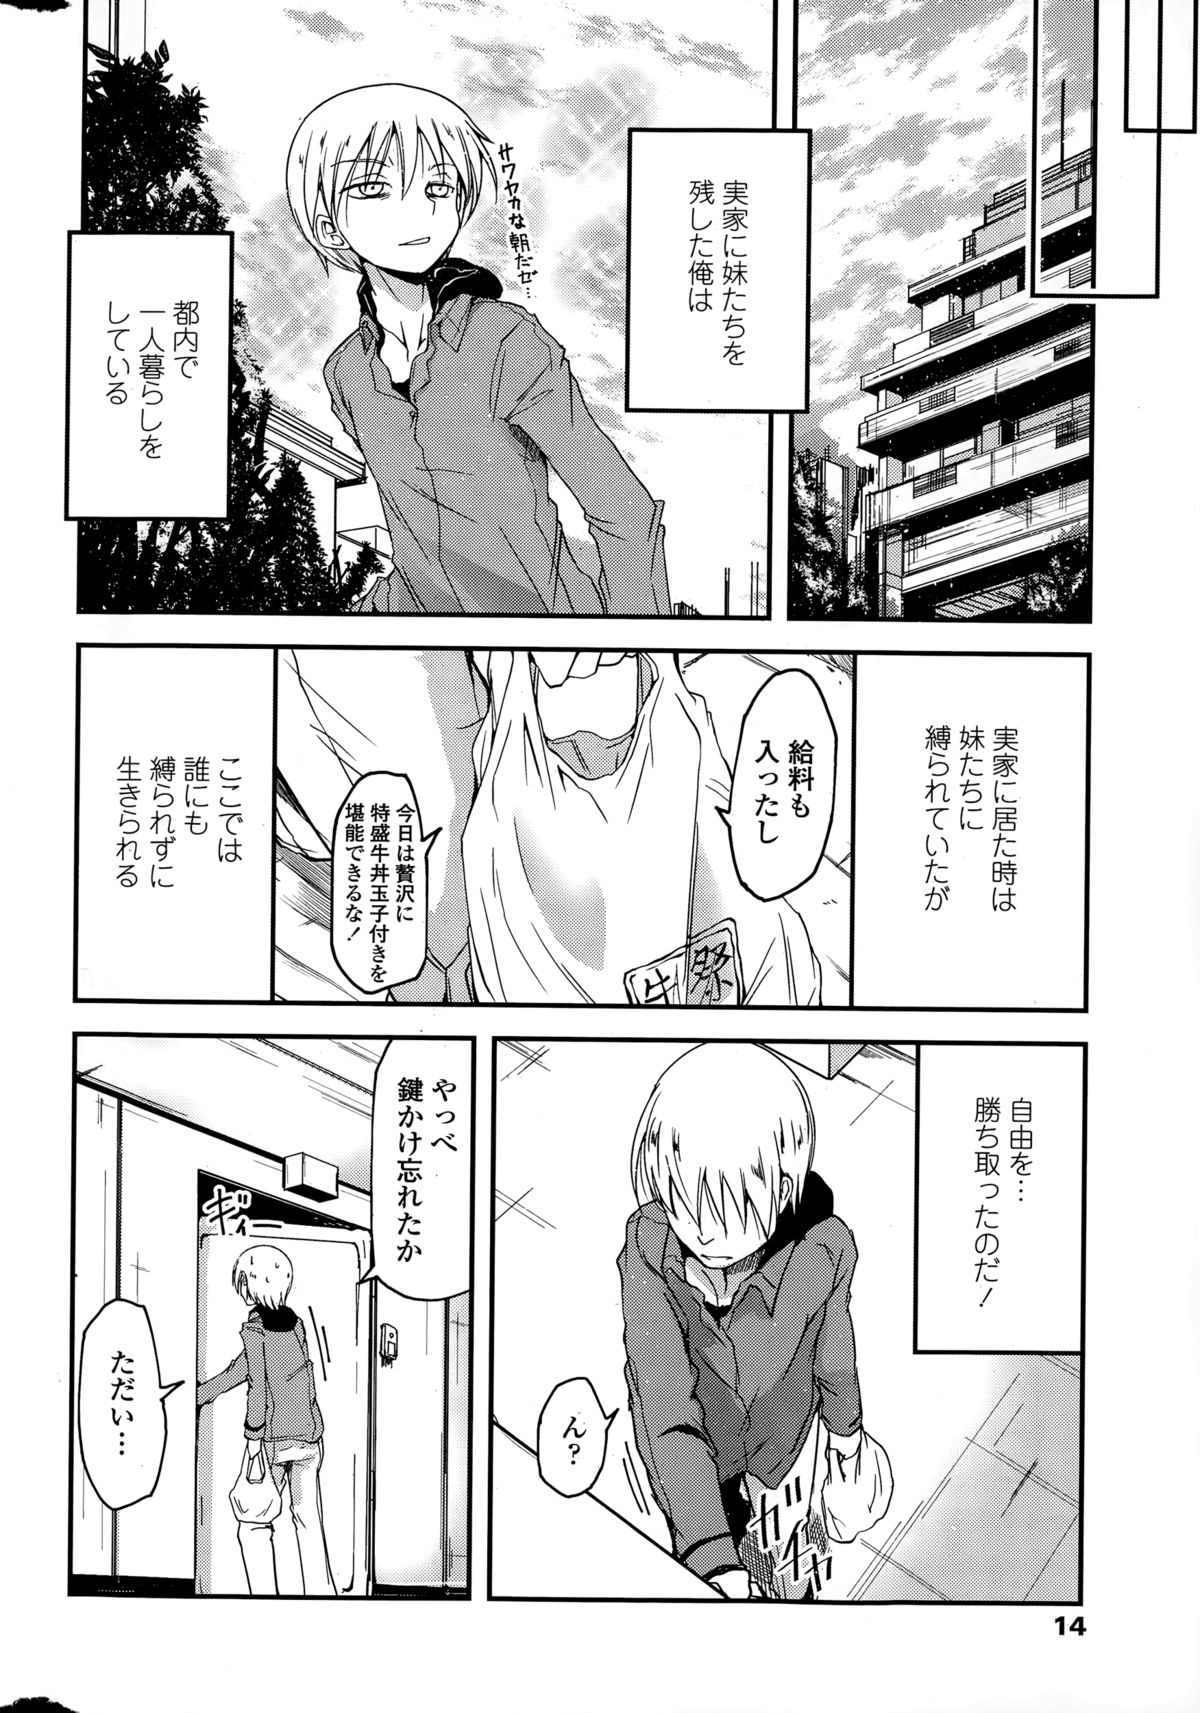 [Sawano Akira] 9-Nin no Imouto-sama Ch. 1-5 page 2 full